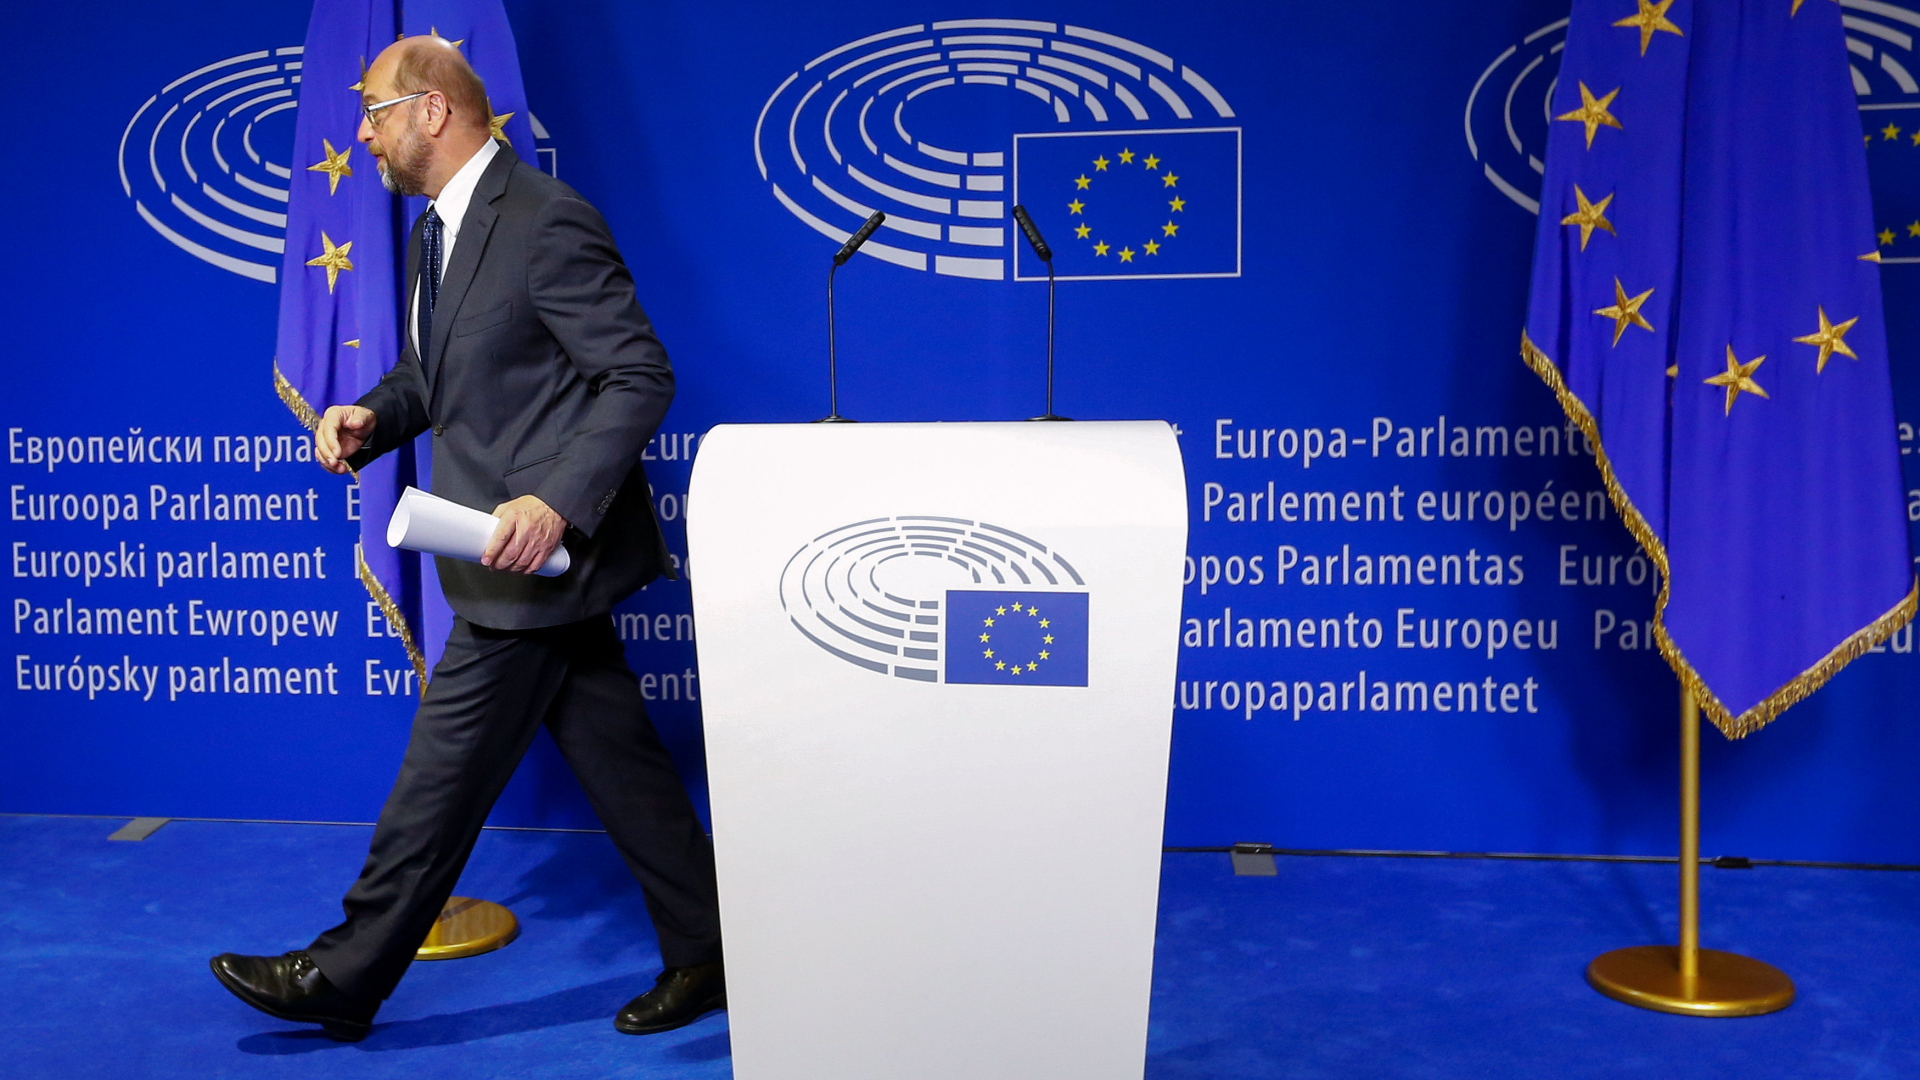 Der Europäische Parlamentspräsident Schulz verlässt eine Pressekonferenz in Brüssel. | REUTERS